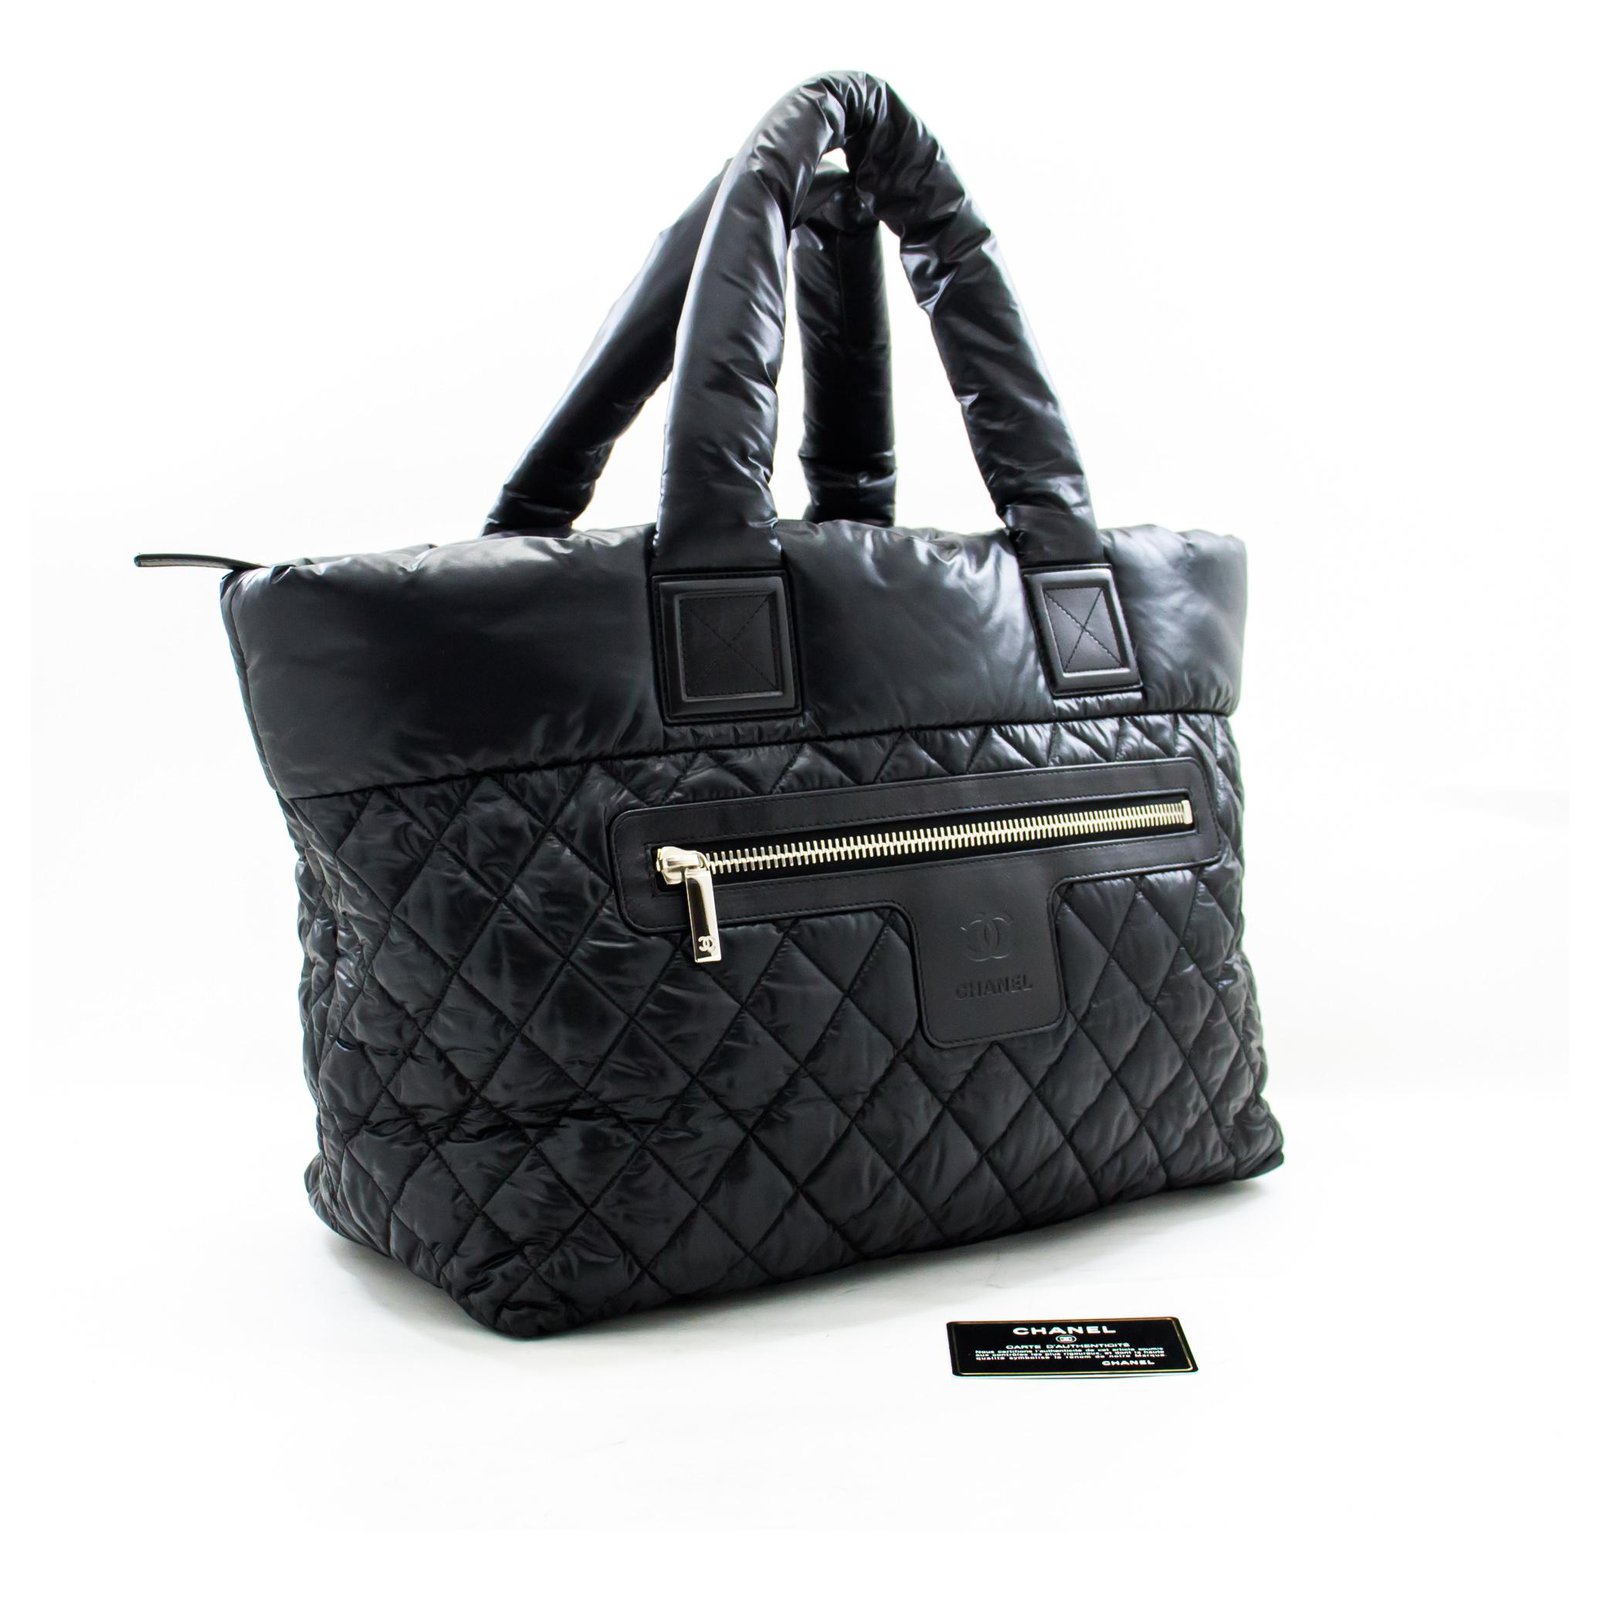 Chanel Coco Cocoon Tote - Black Totes, Handbags - CHA731784